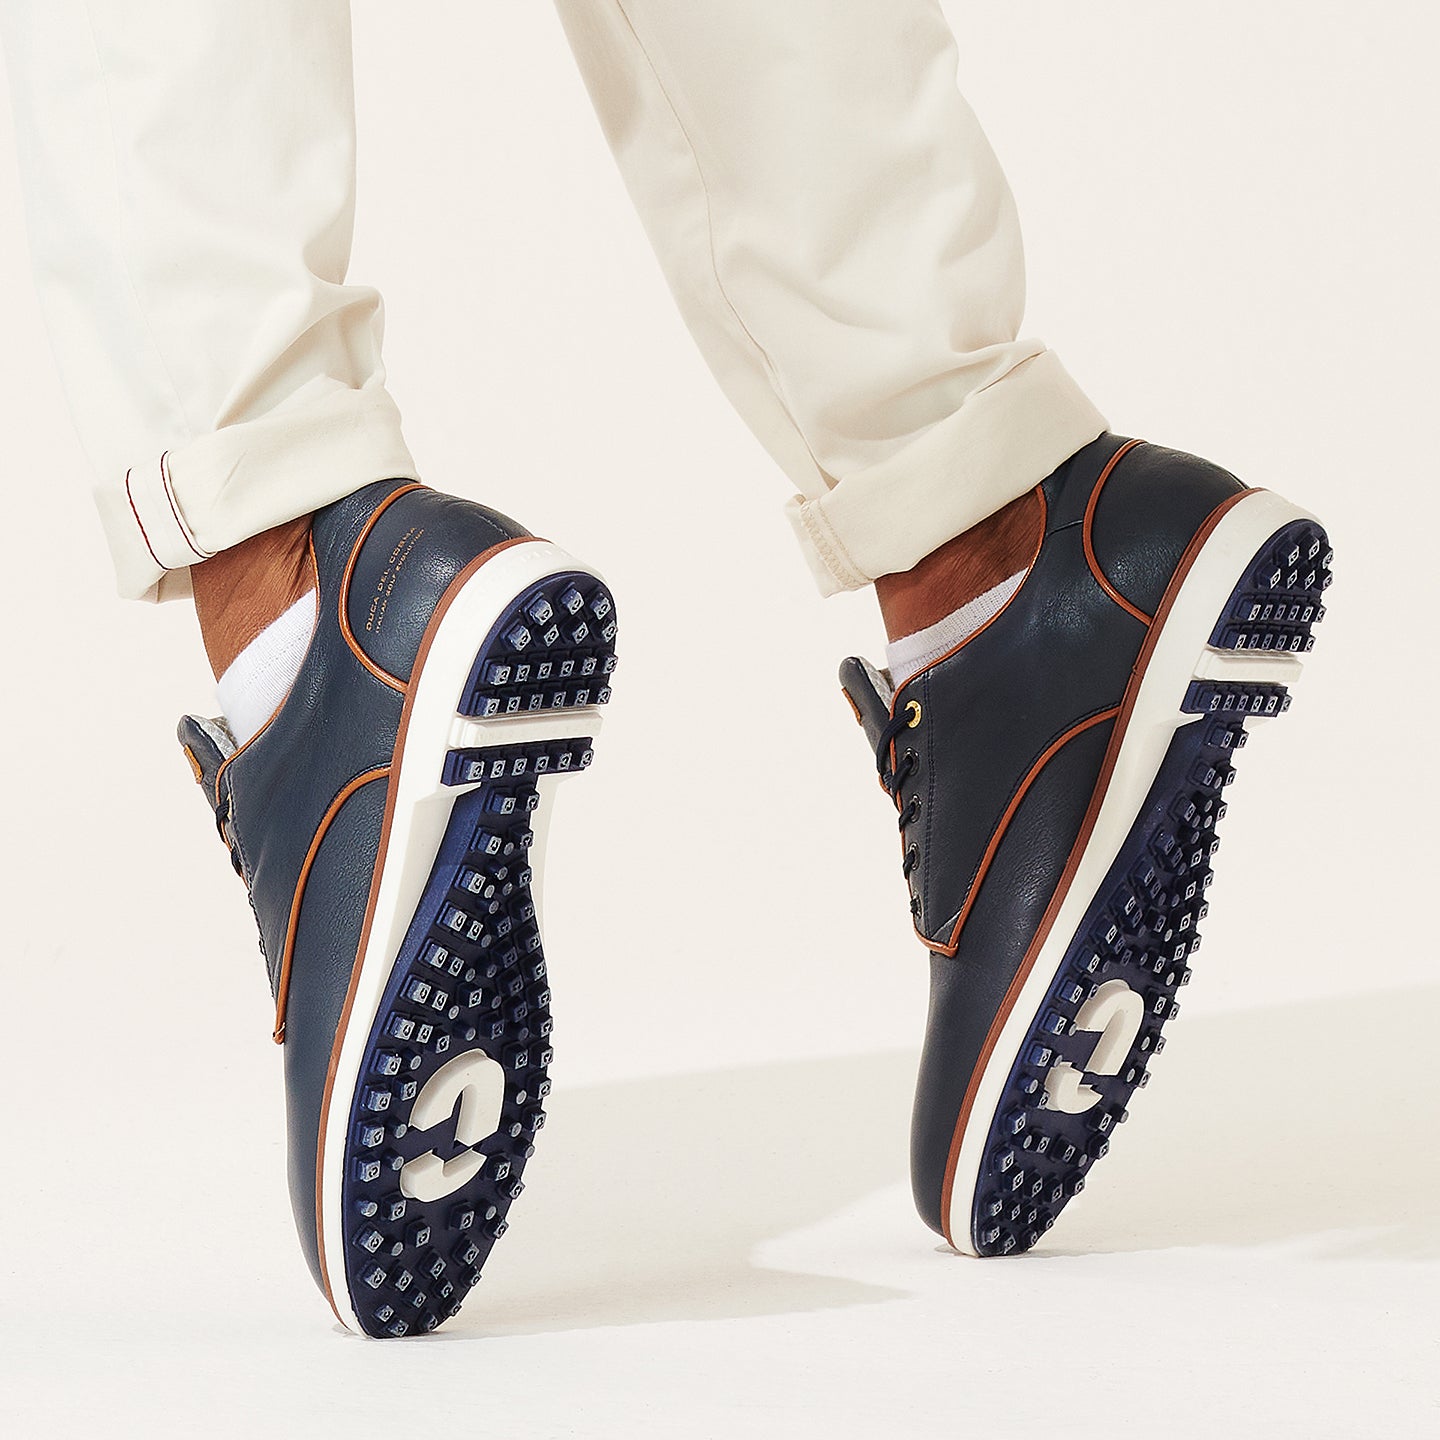 Elpaso blue best waterproof men's golf shoe from duca del cosma